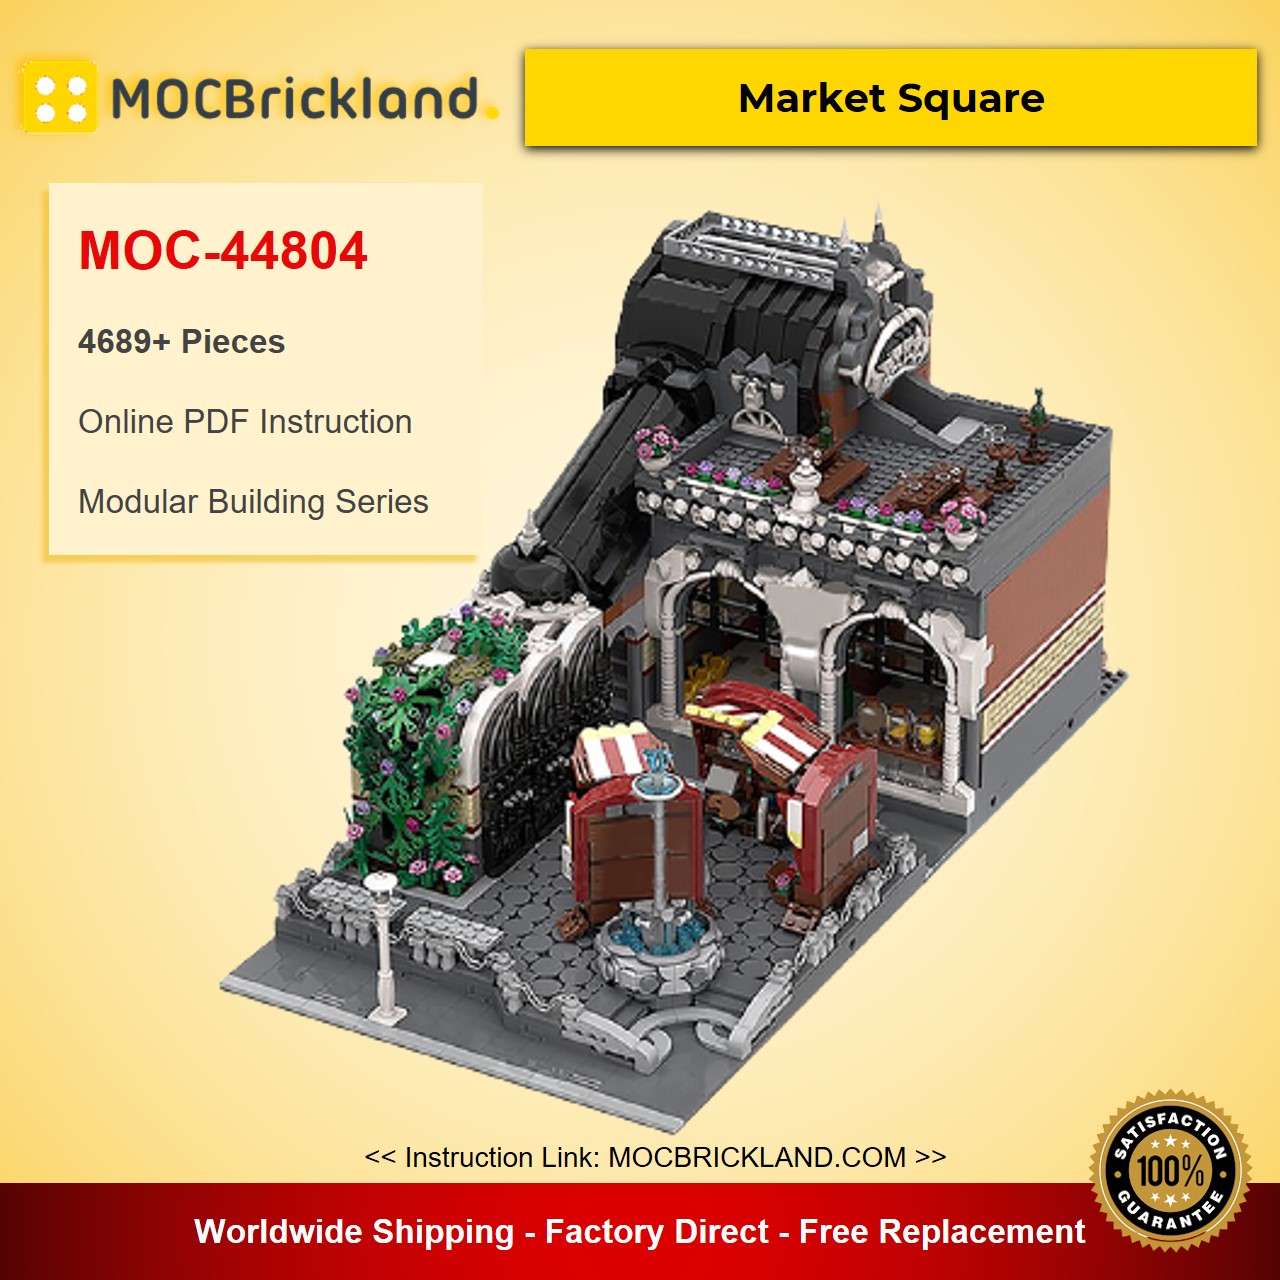 modular building moc 44804 market square by black mantled builder mocbrickland 5357